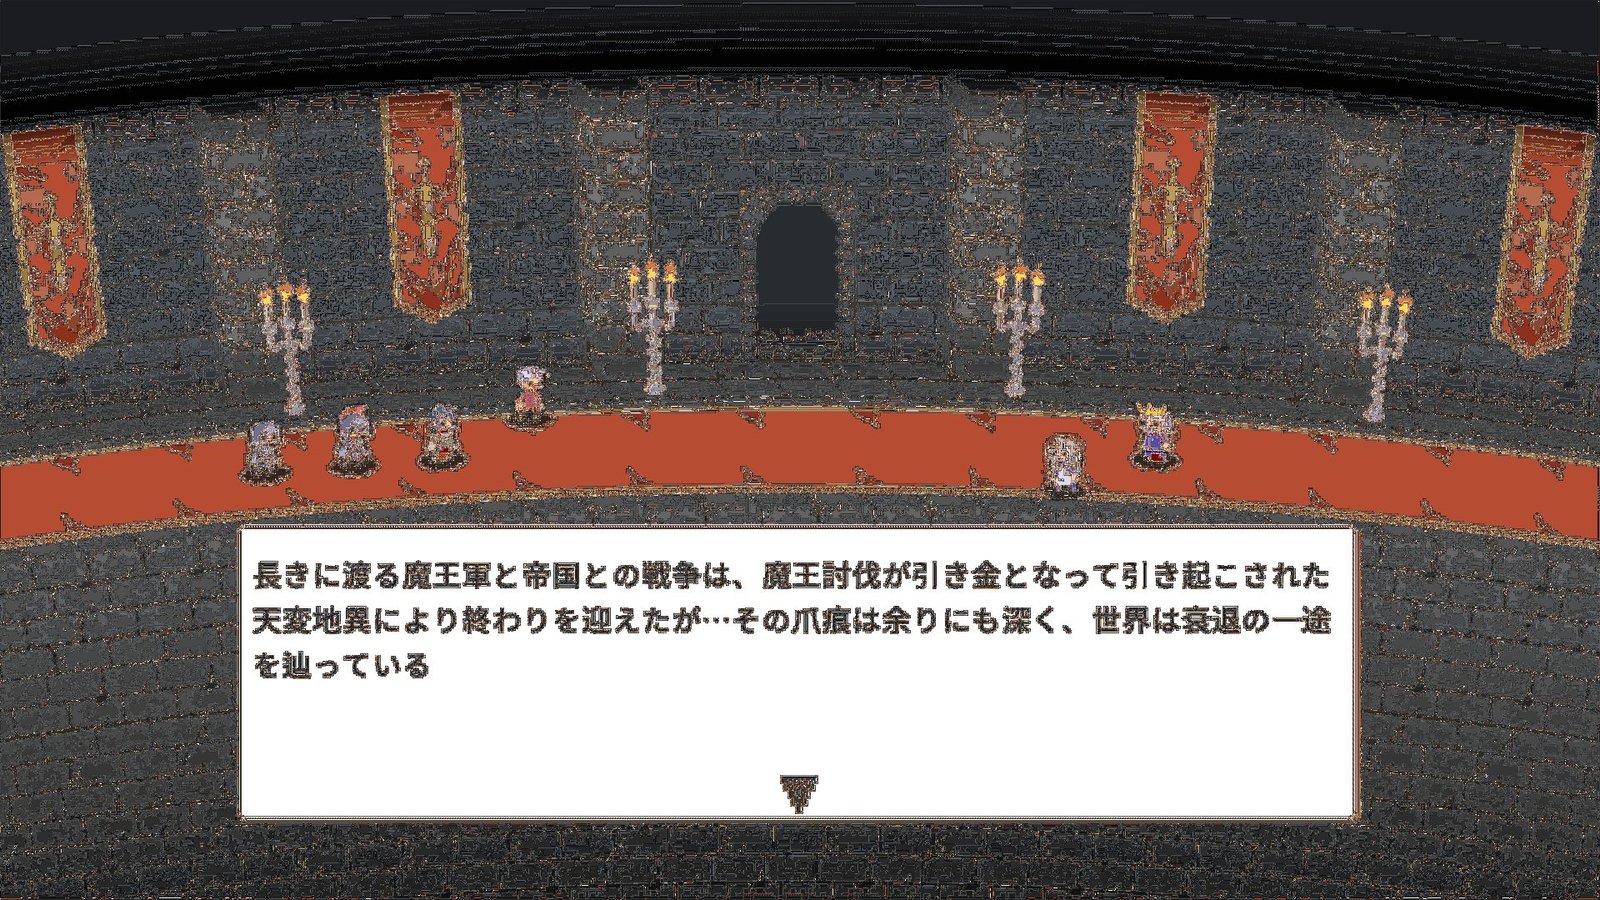 Akatsuki: Lord of the Dawn Nintendo Switch